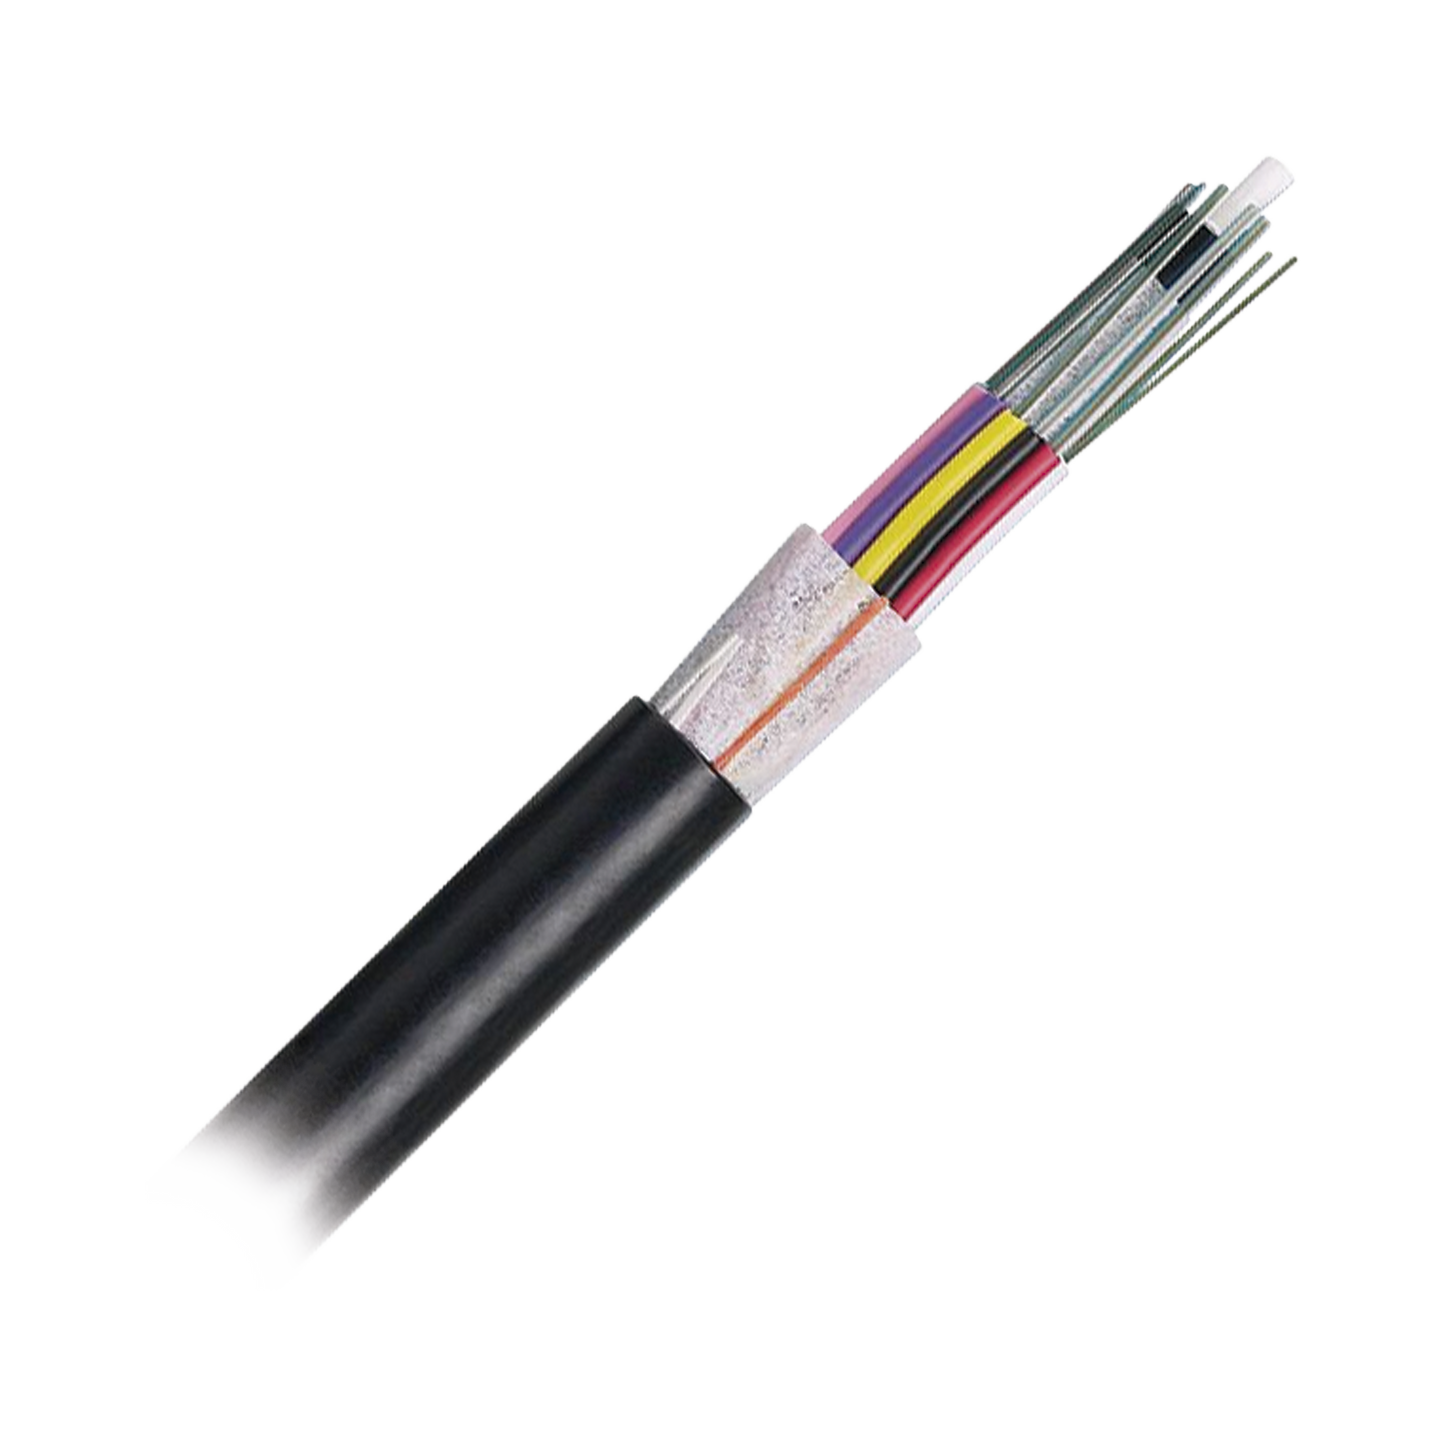 Cable de Fibra Óptica 6 hilos, OSP (Planta Externa), No Armada (Dieléctrica), MDPE (Polietileno de Media densidad), Multimodo OM3 50/125 Optimizada, Precio Por Metro